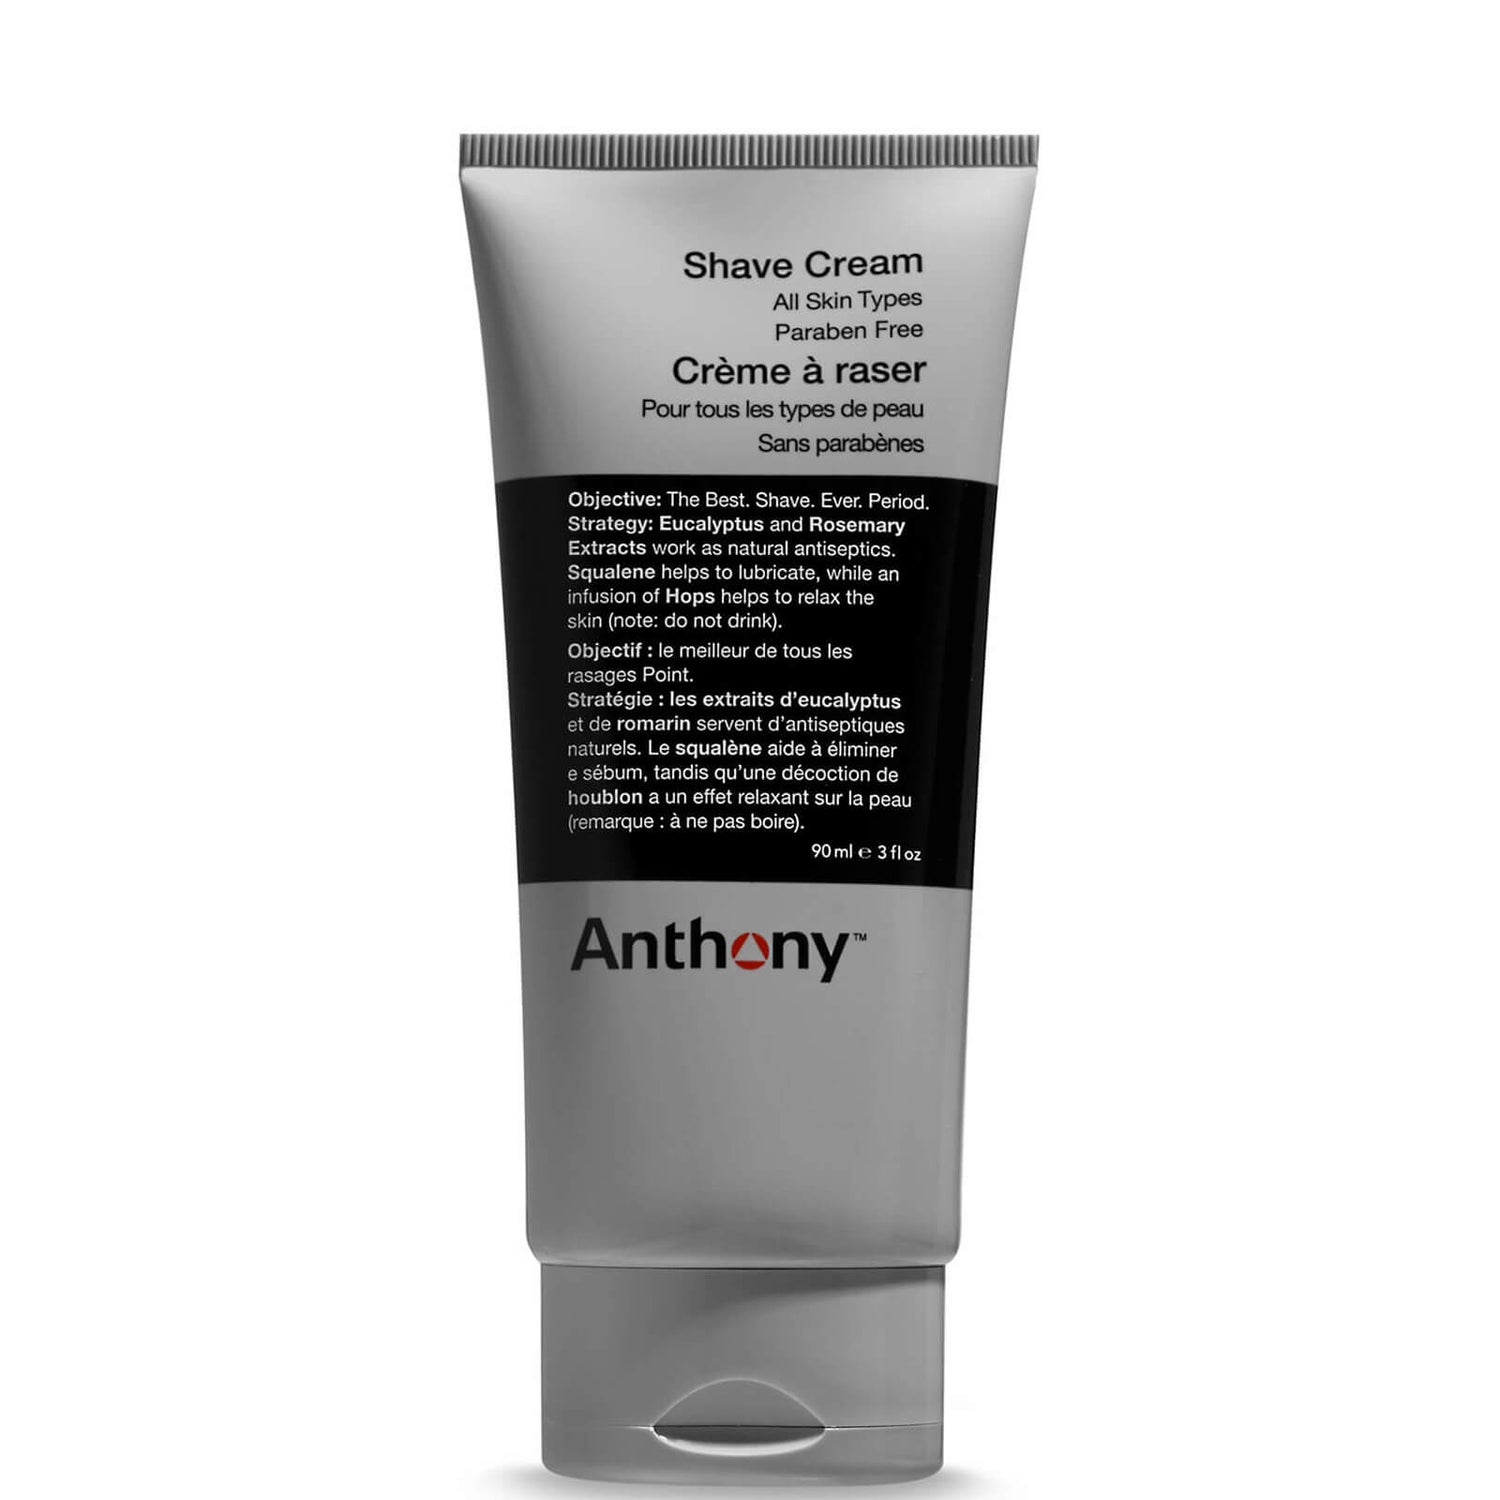 Crema de Afeitar de Anthony 90 ml